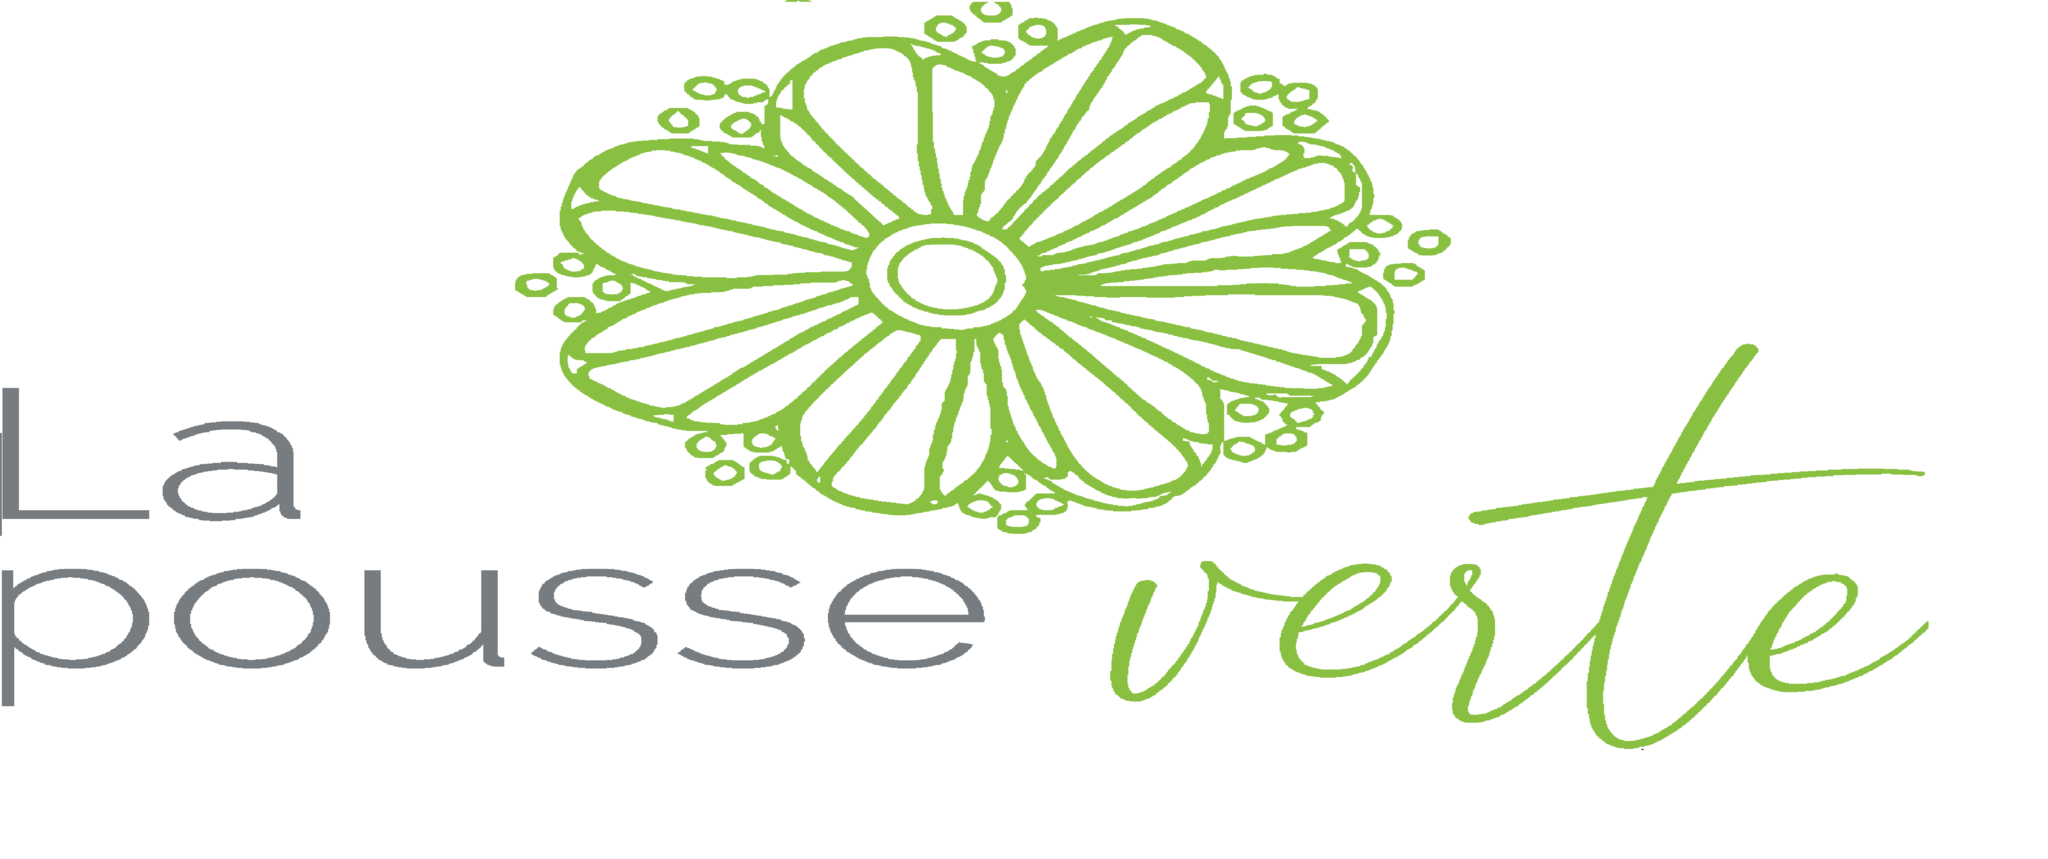 Fleuriste La Pousse Verte - Florists & Flower Shops